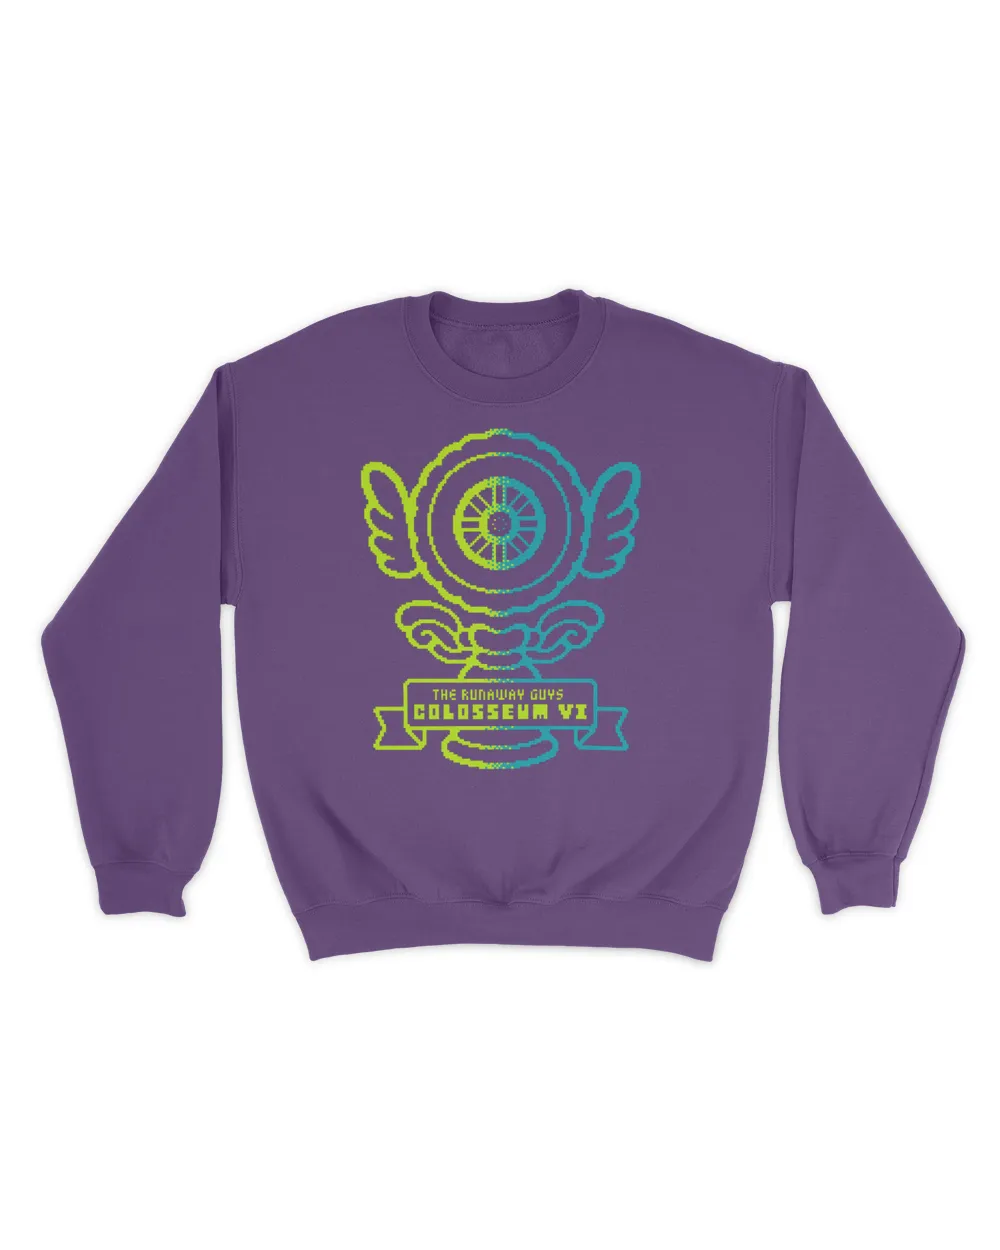 2023 TRG Colosseum VI Shirt Unisex Sweatshirt purple 